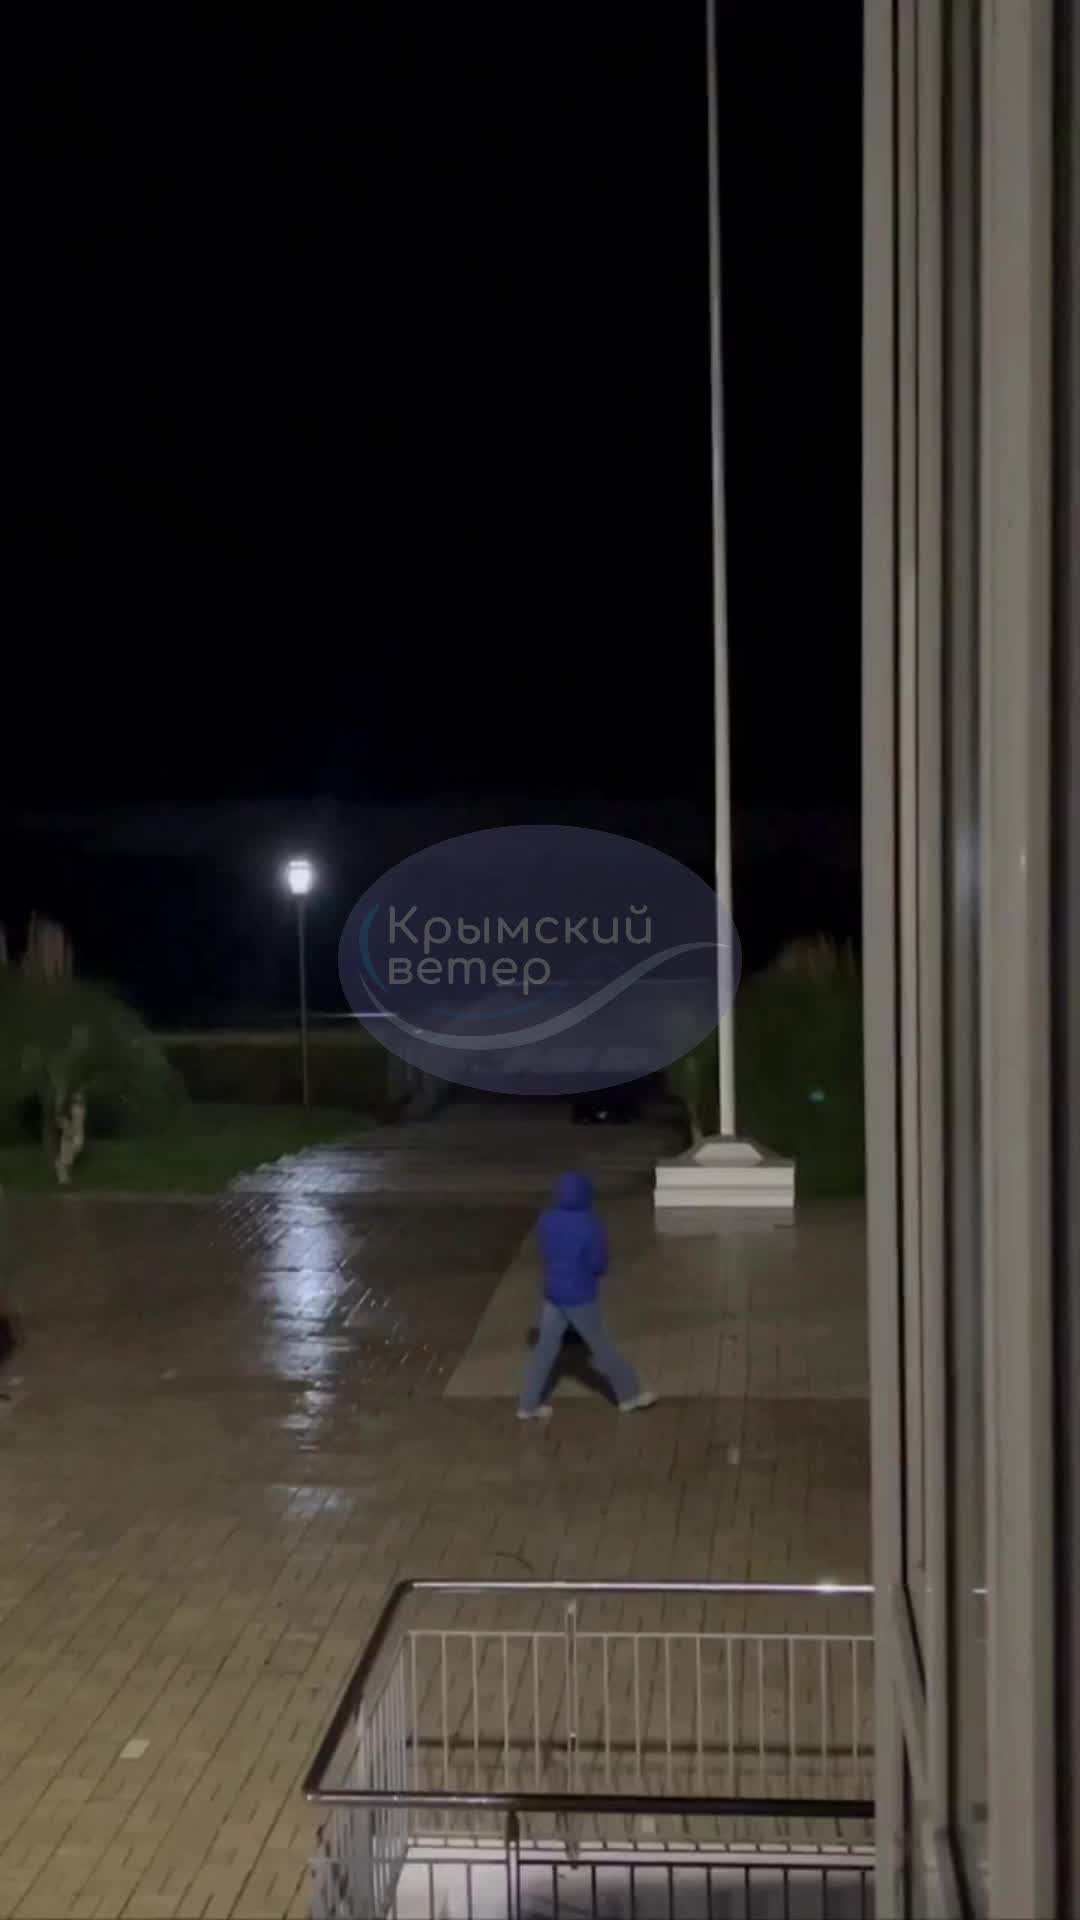 Kırım'da şiddetli fırtına